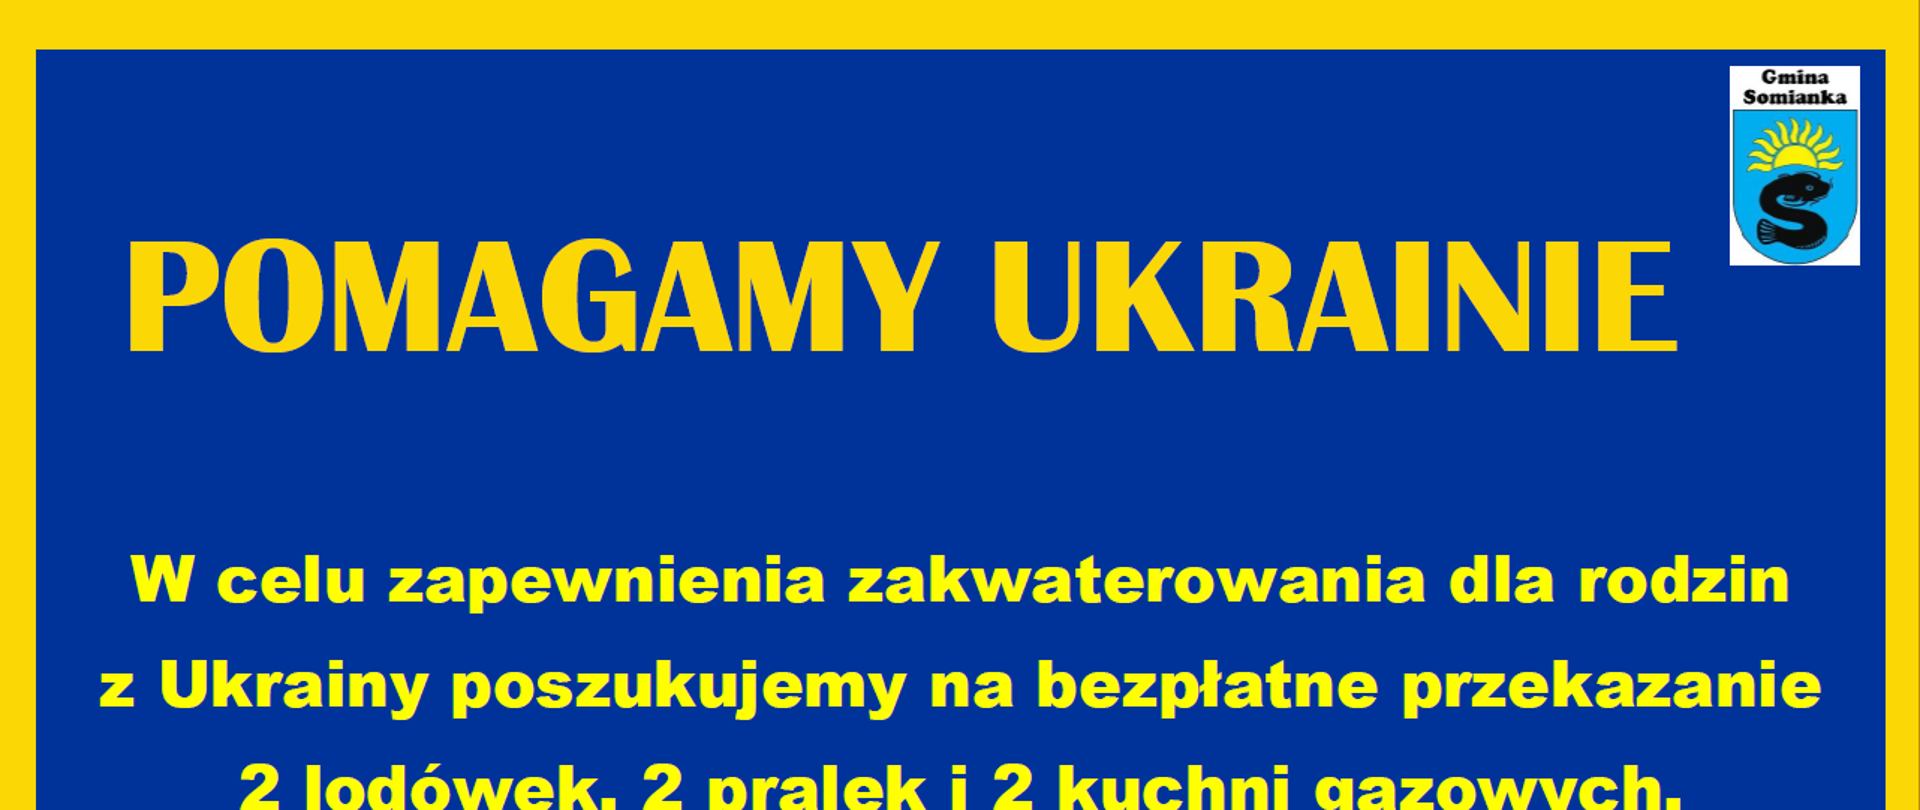 plakat Pomagamy Ukrainie niebieskie tło, żółte litery dookoła plakatu żółta ramka, w górnym prawym rogu herb gminy Somianka.